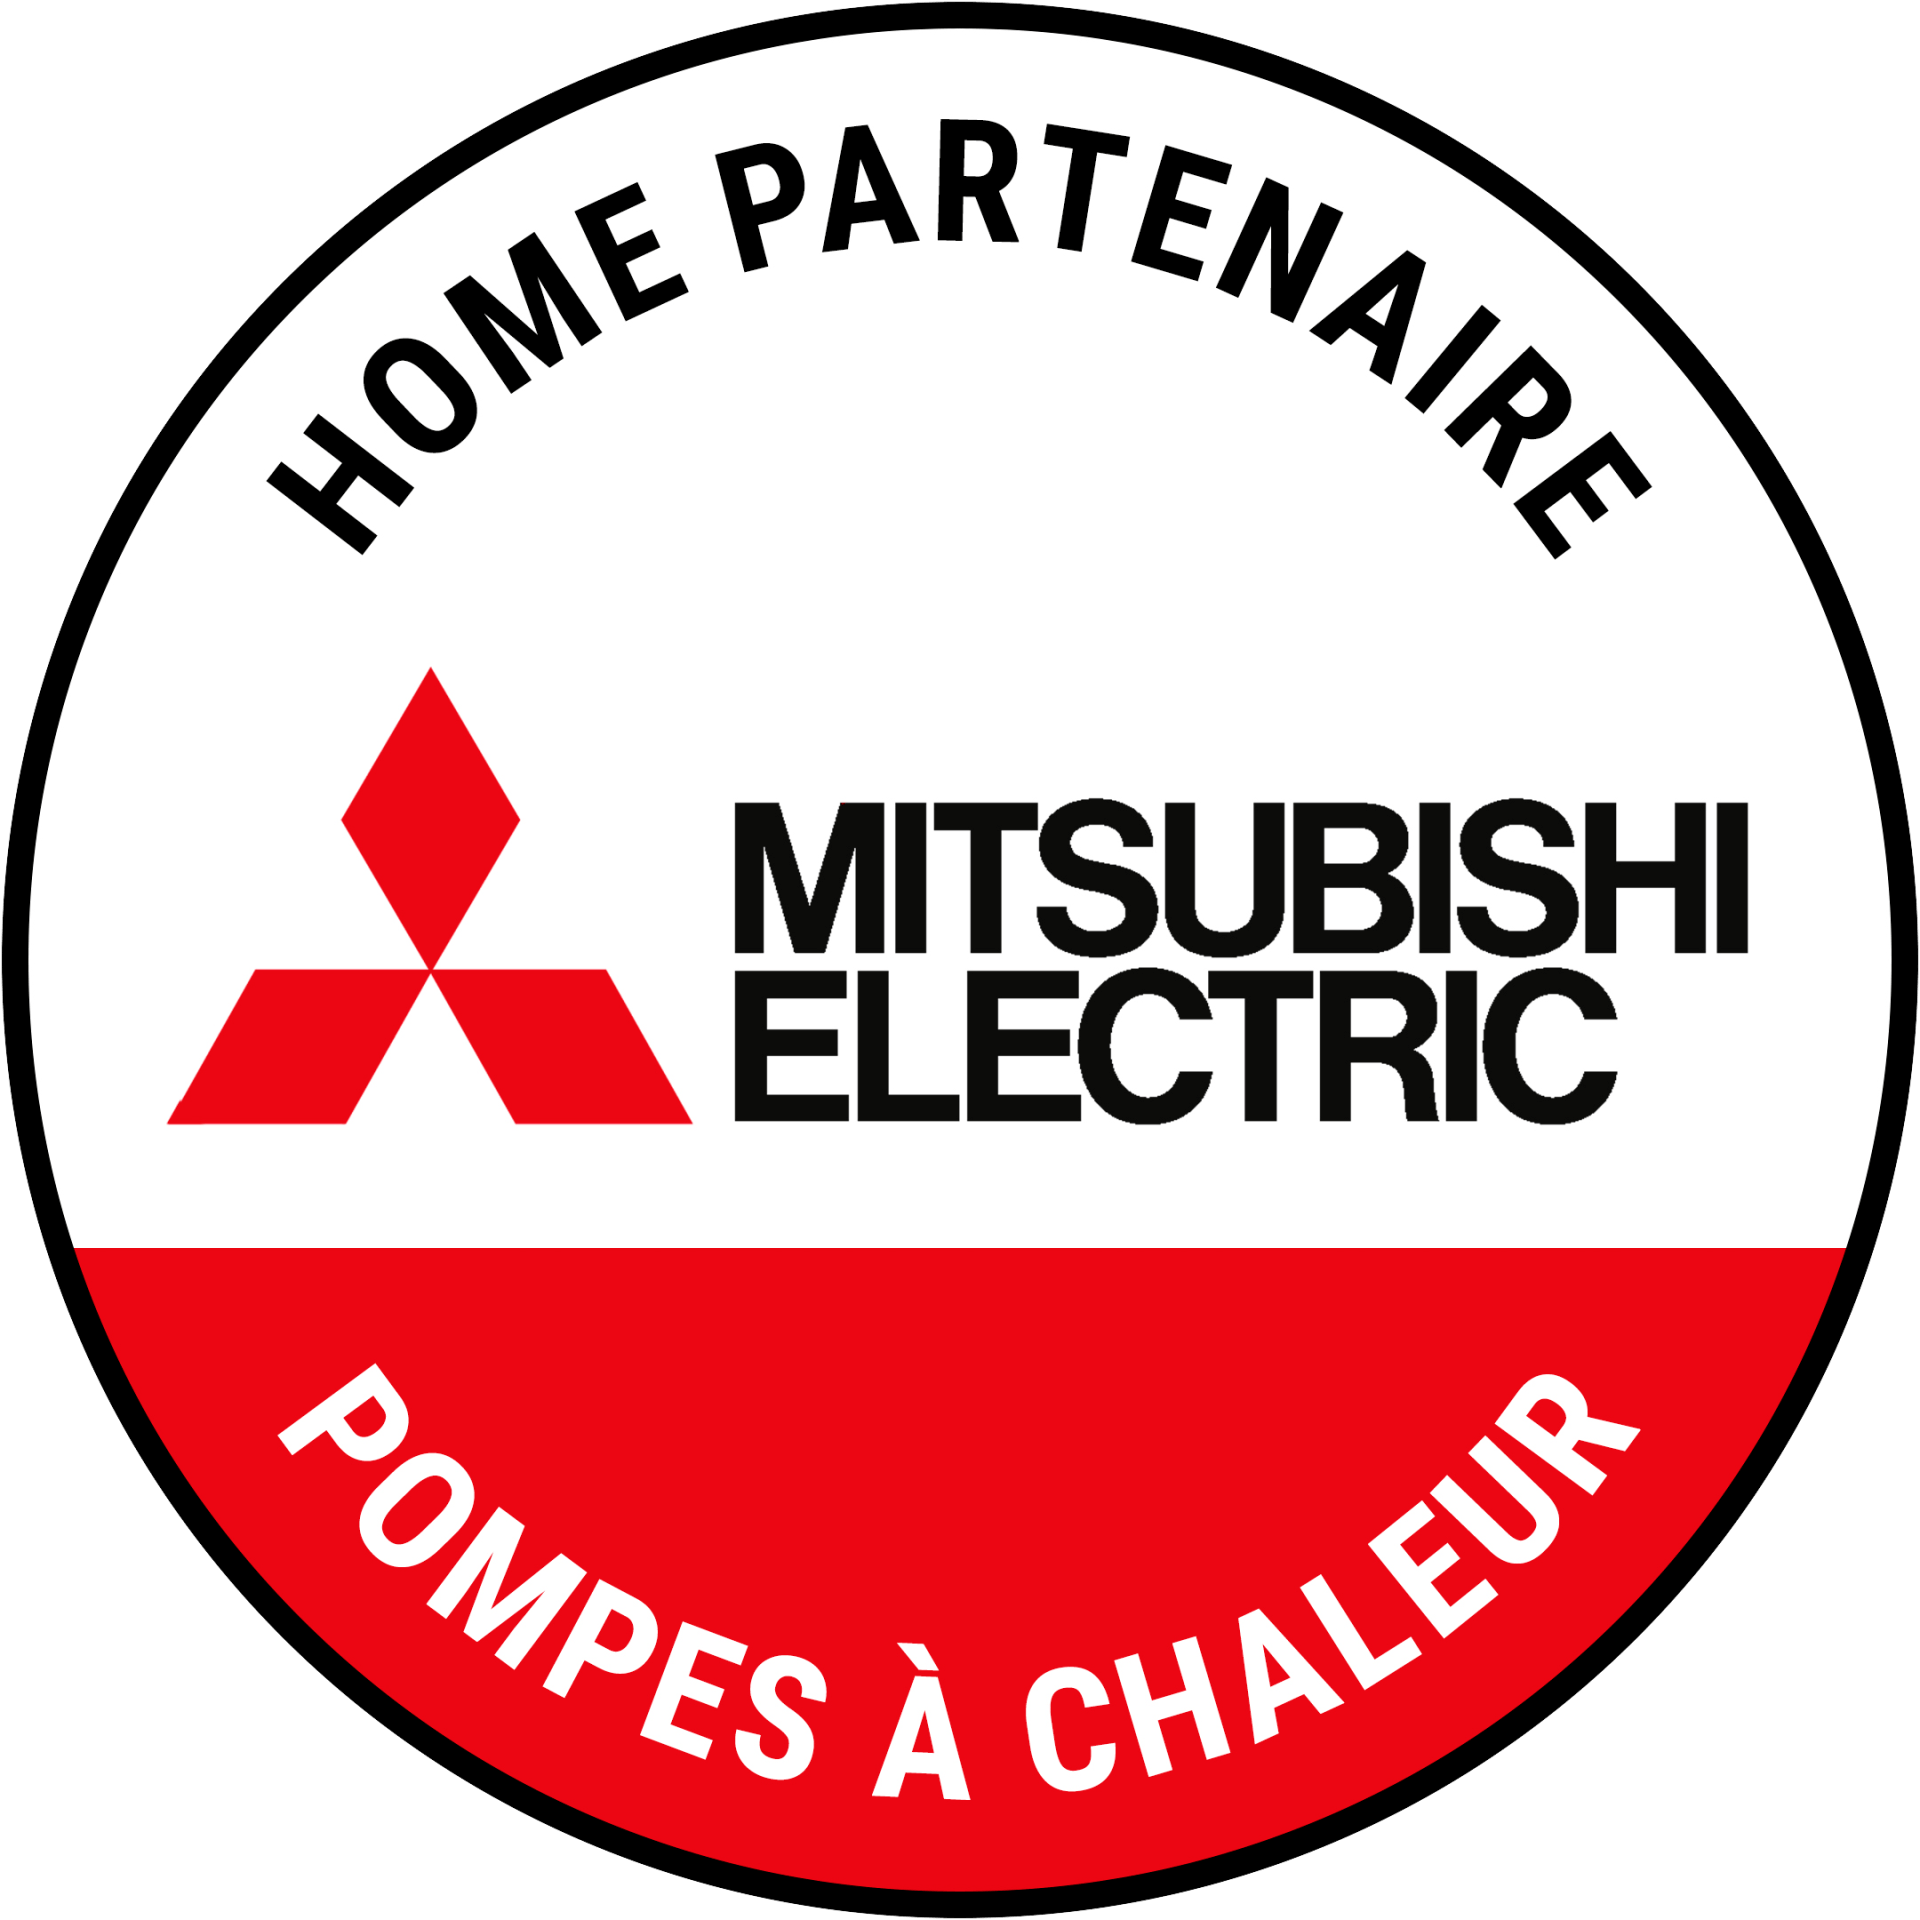 Partenaire-Mitsubishi-Electric-ADL-Services-pompe-a-chaleur-climatisation